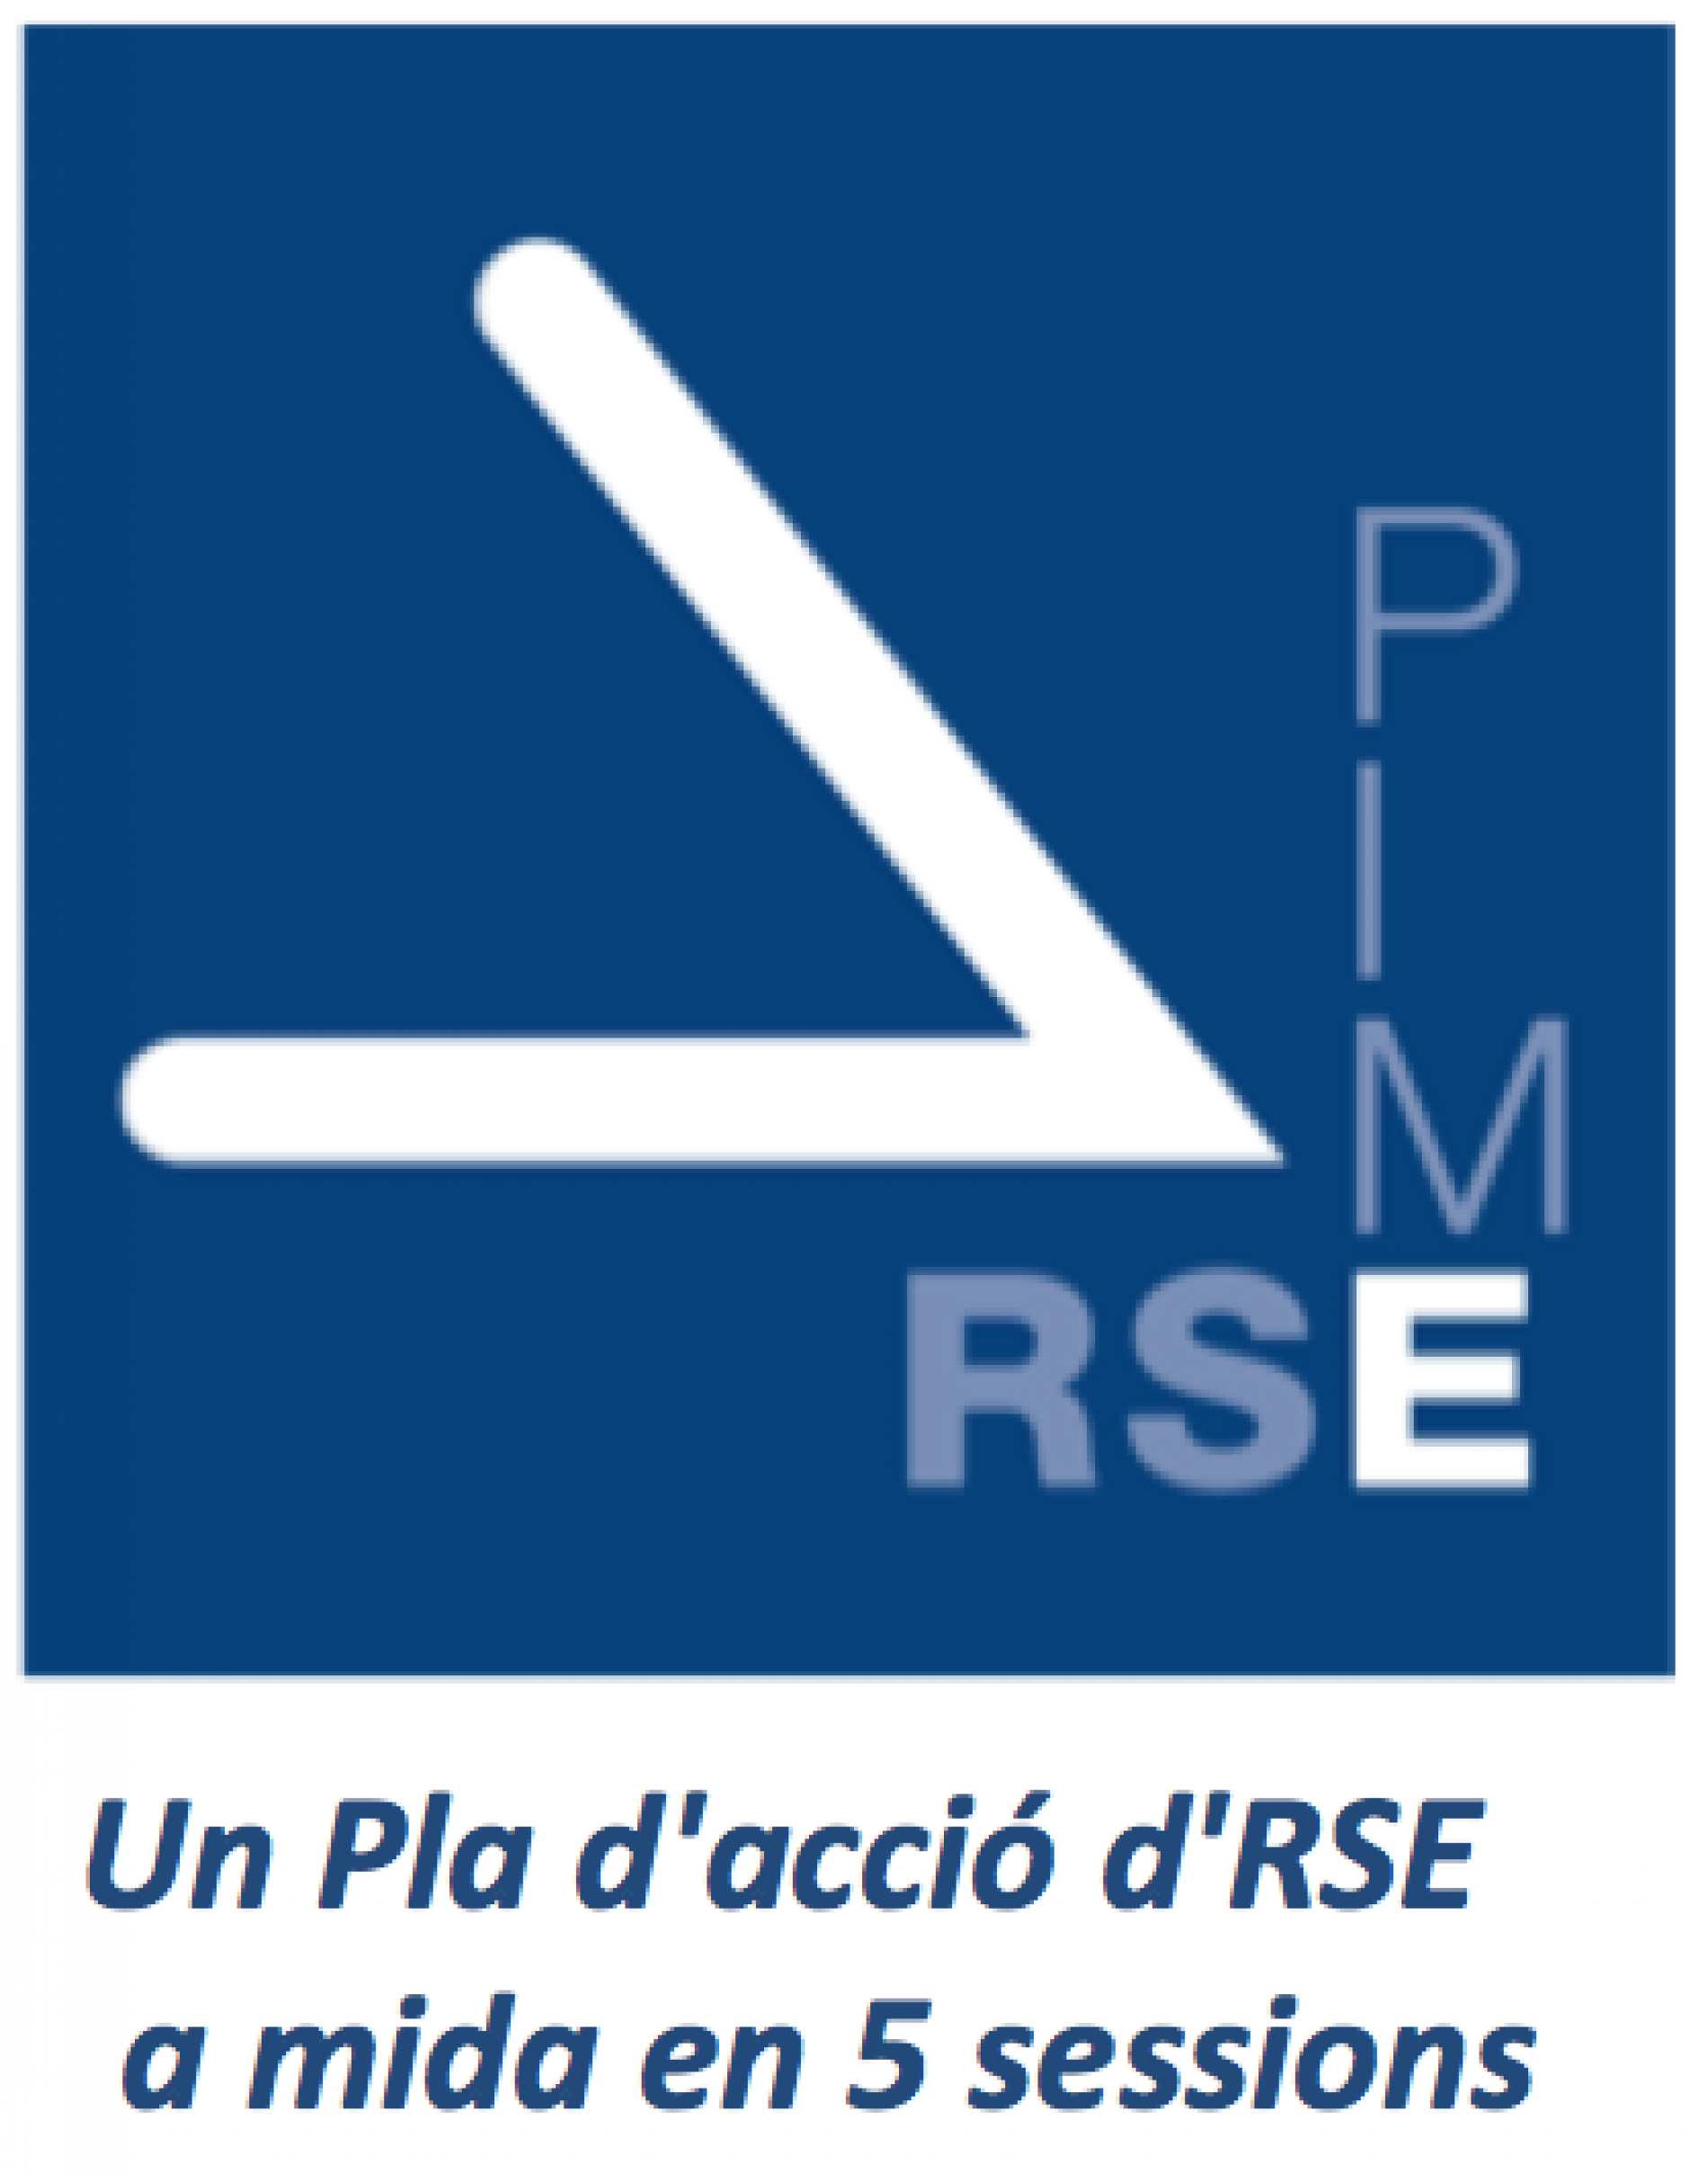 Característiques del Programa RSE.Pime